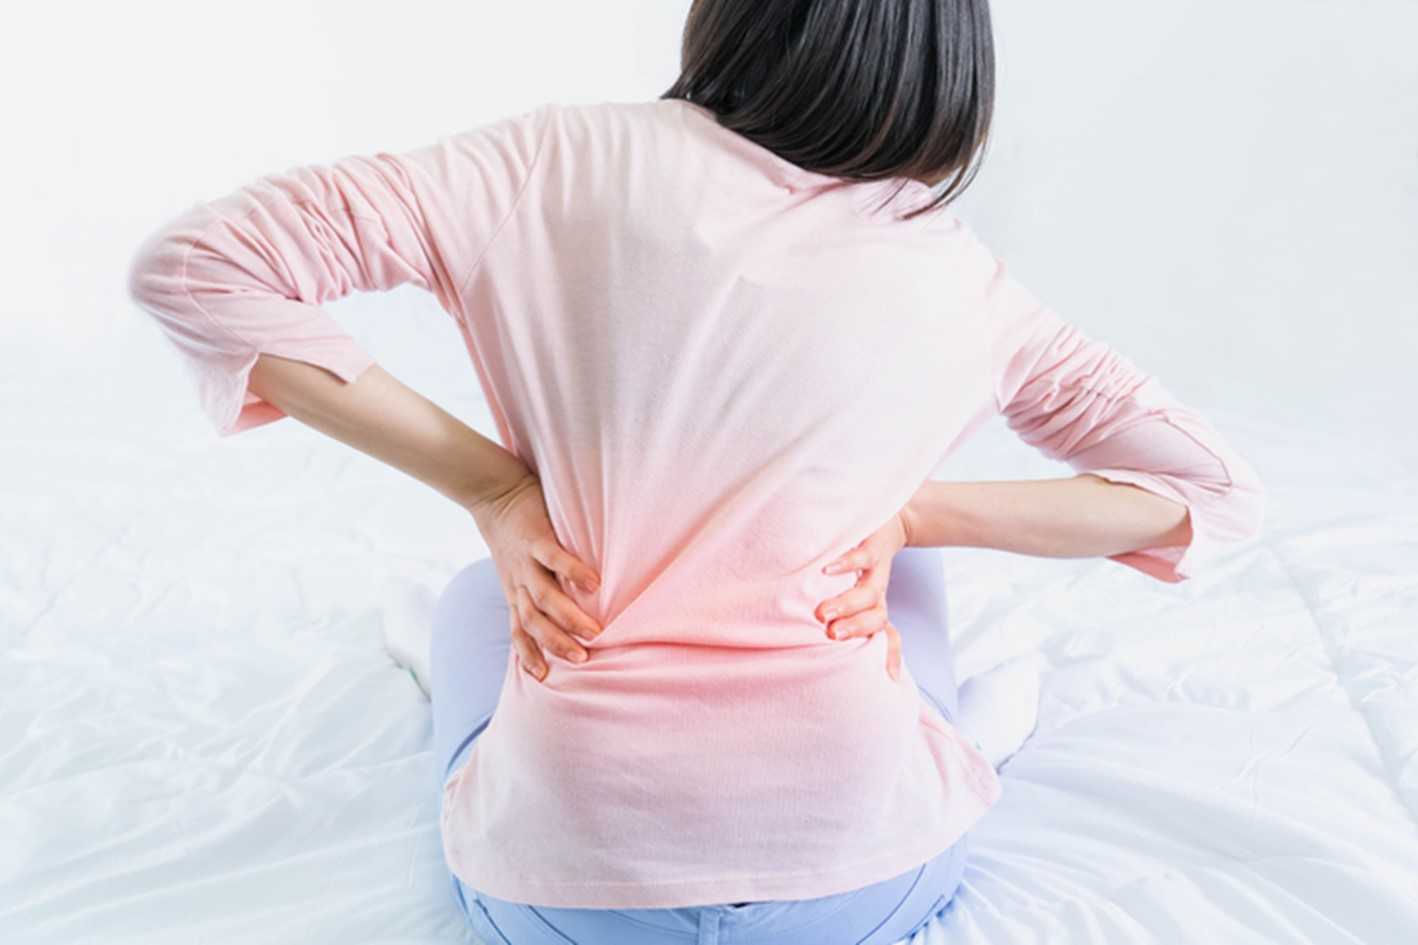 Exercicis que hem d'evitar per alleujar el mal d'esquena